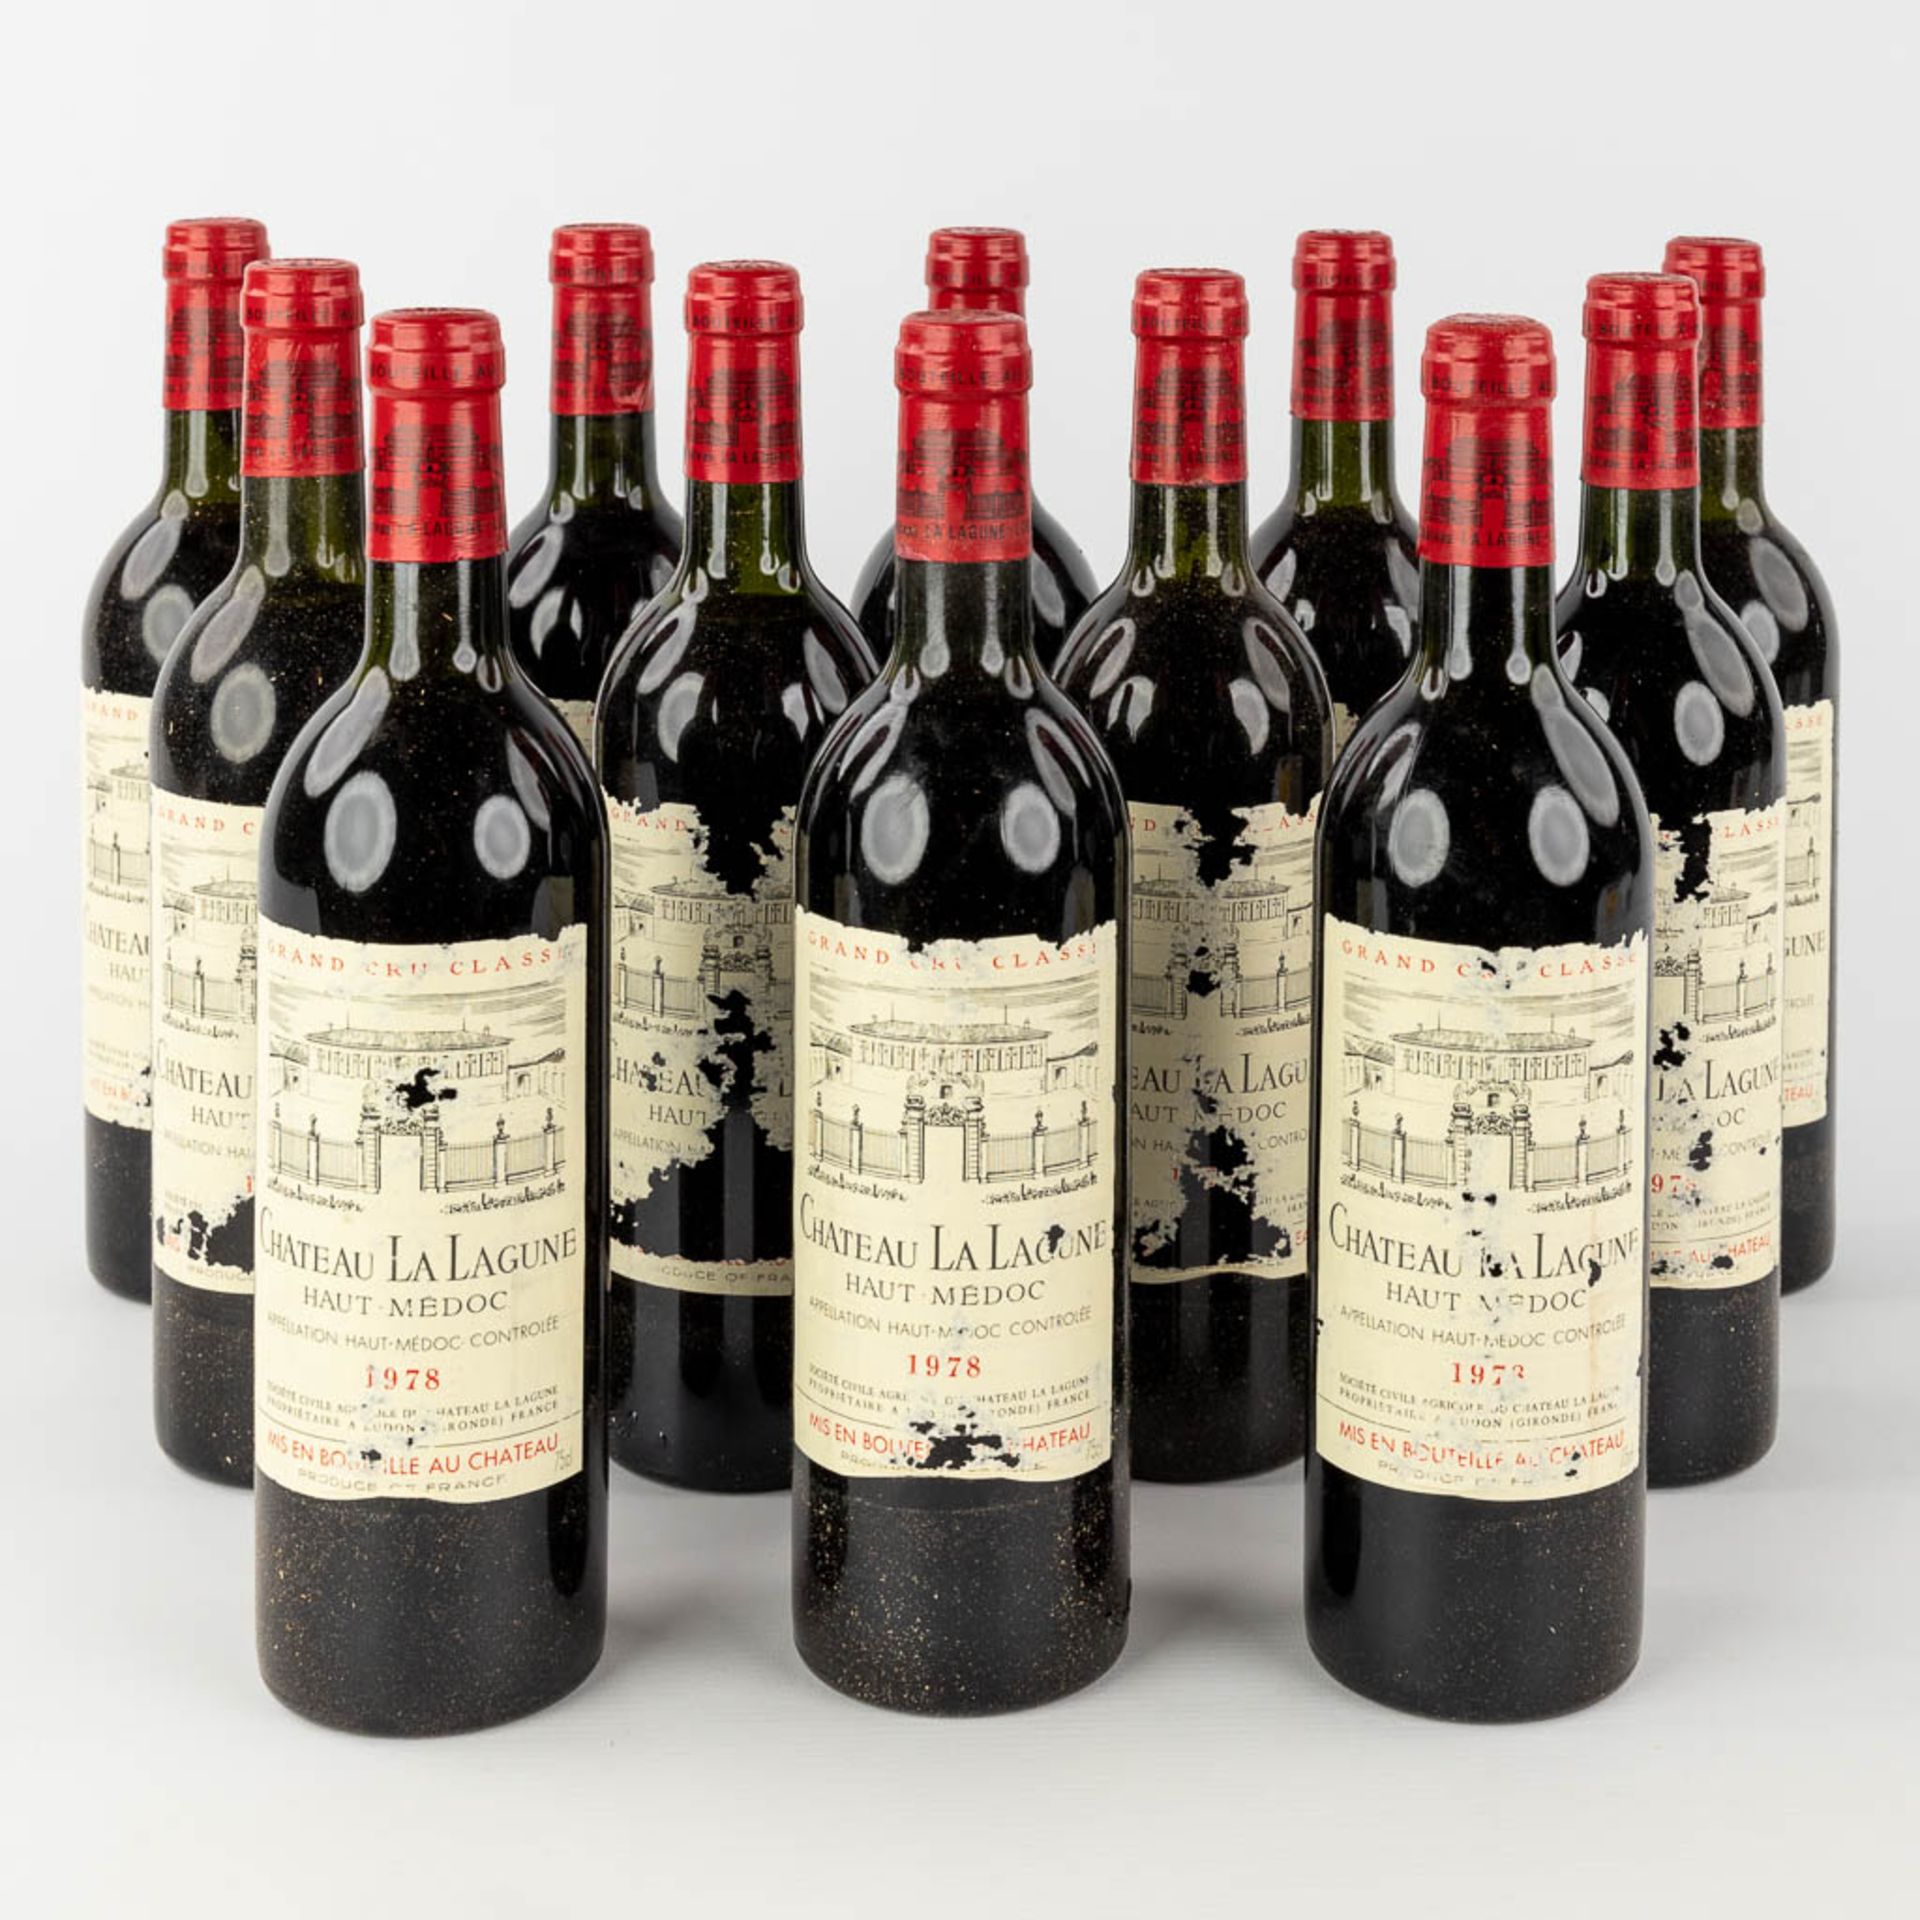 Château La Lagune Haut Médoc, 1978, 12 bottles.